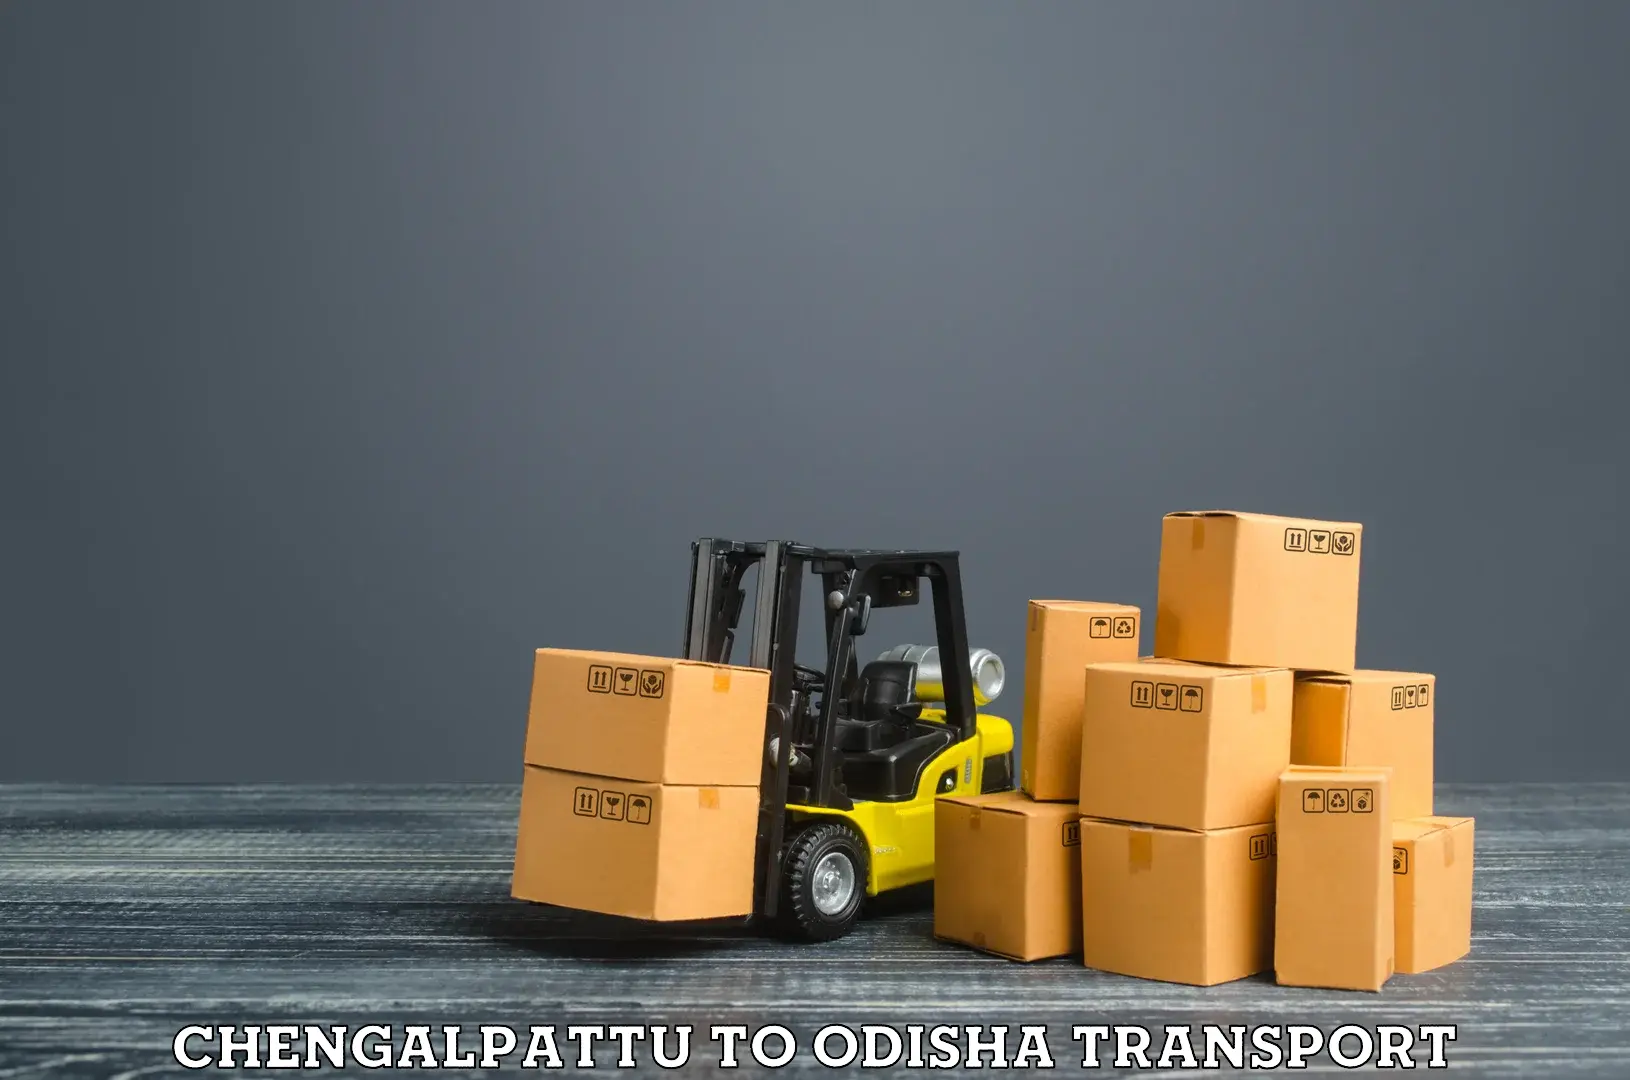 Daily transport service Chengalpattu to Odisha